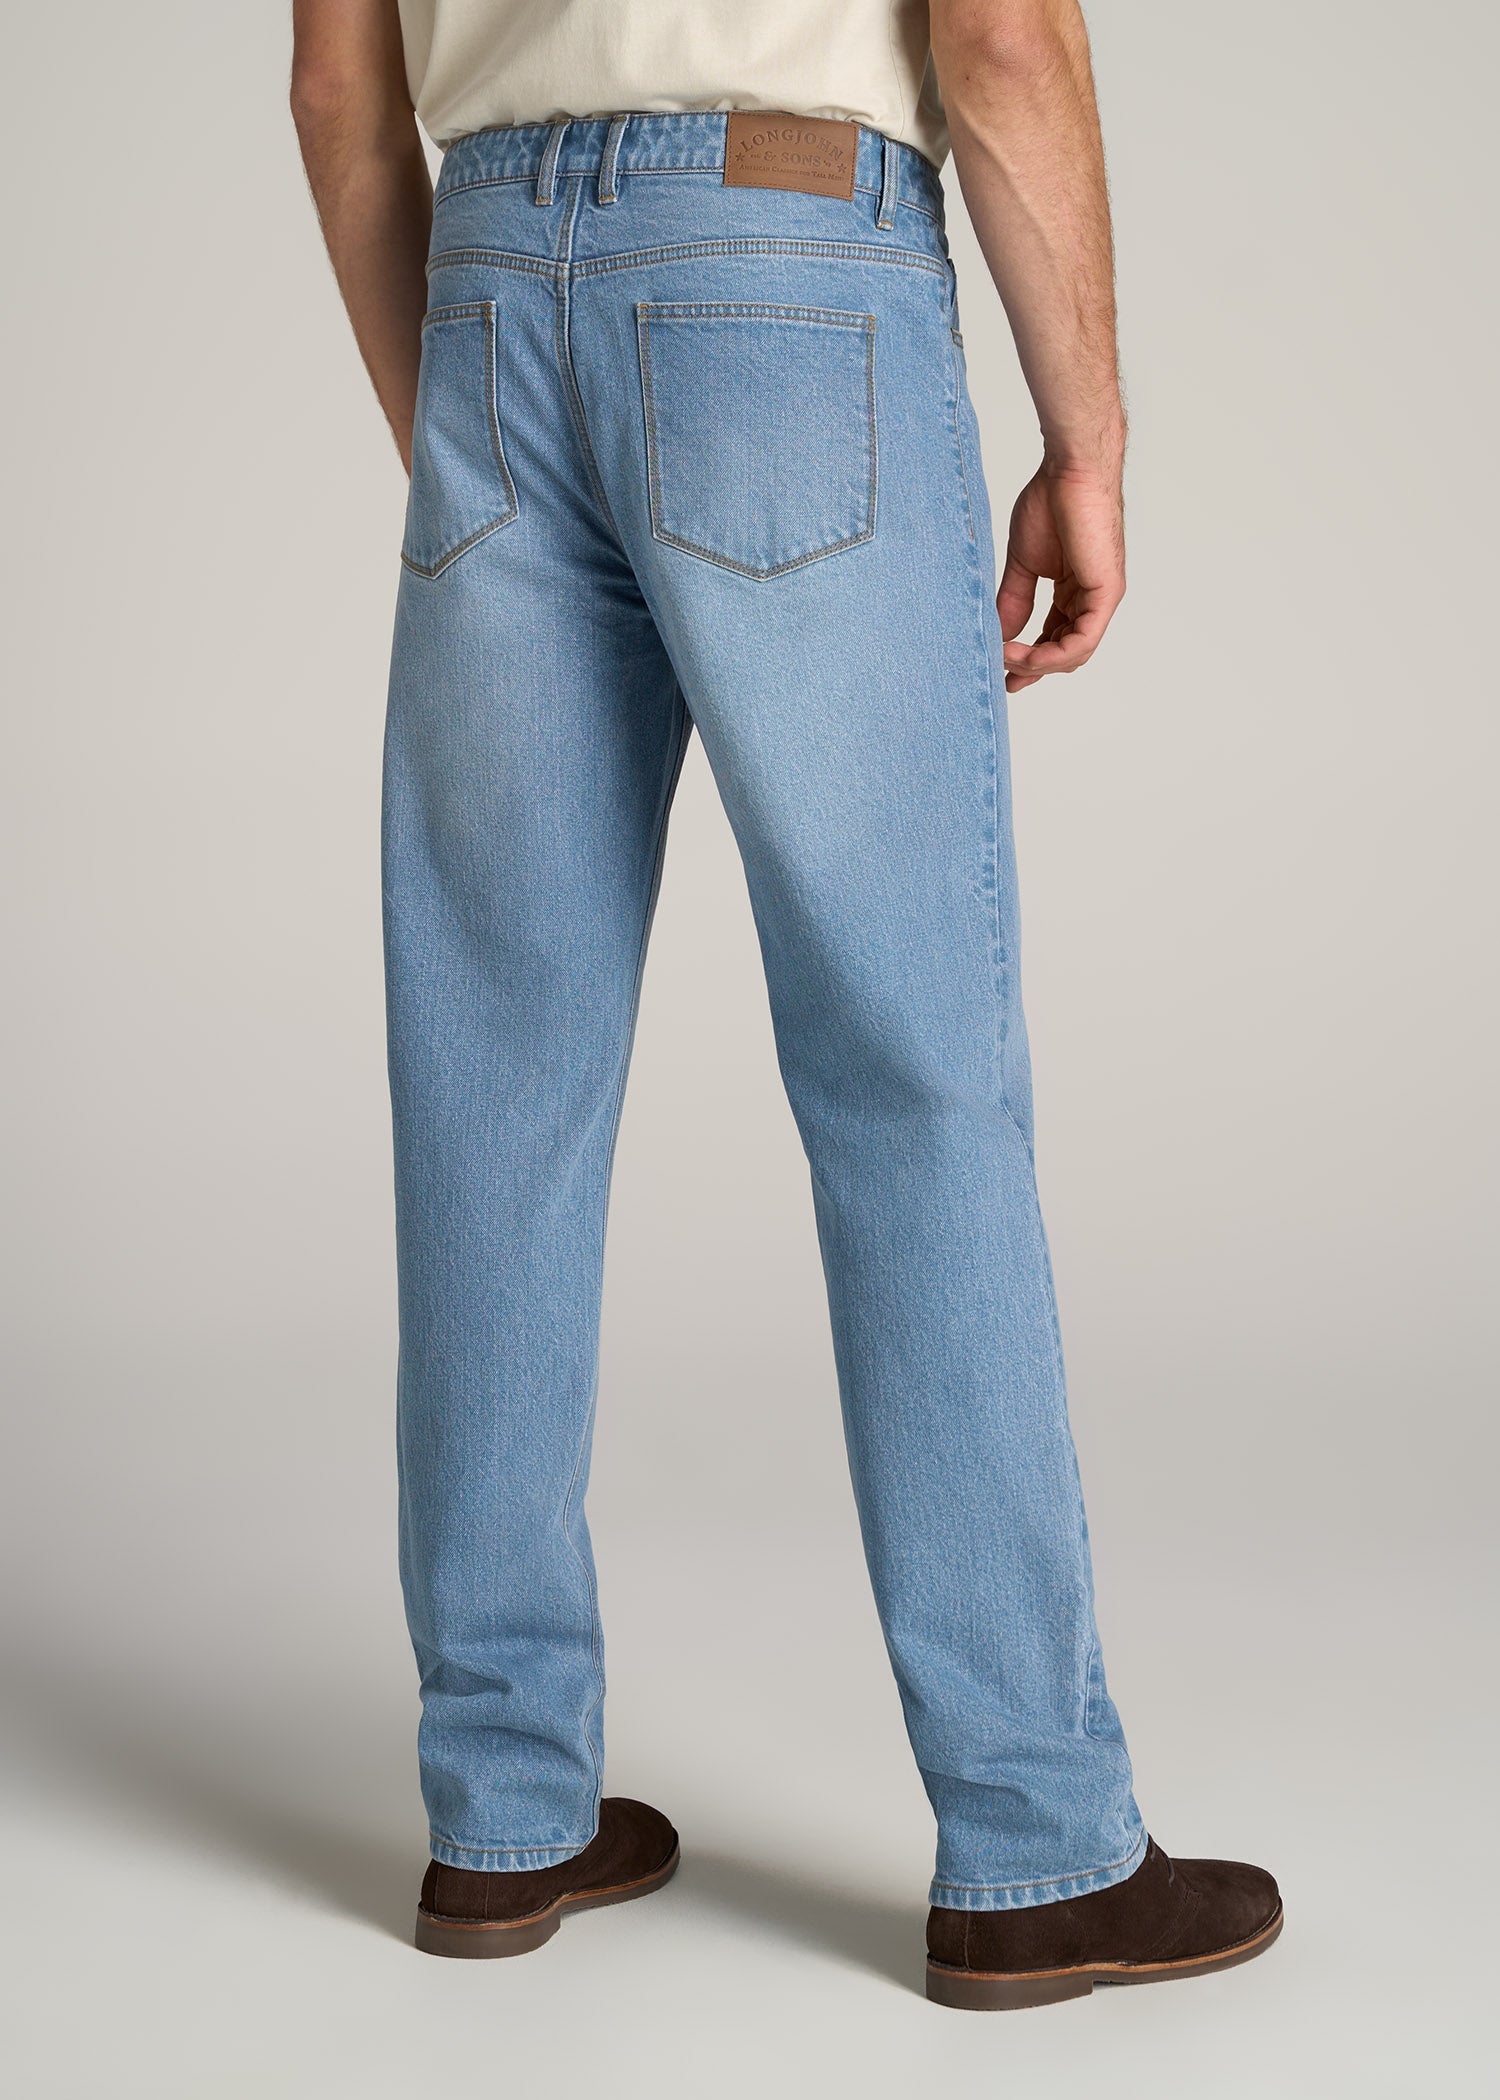 Men's Regular-Fit Jeans